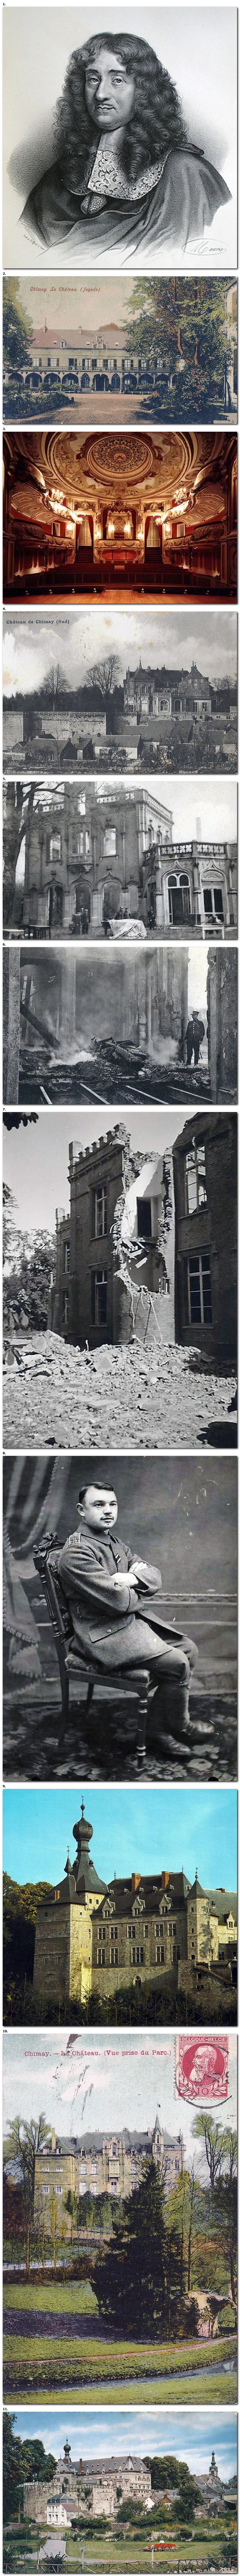 Les multiples destructions du Château de Chimay